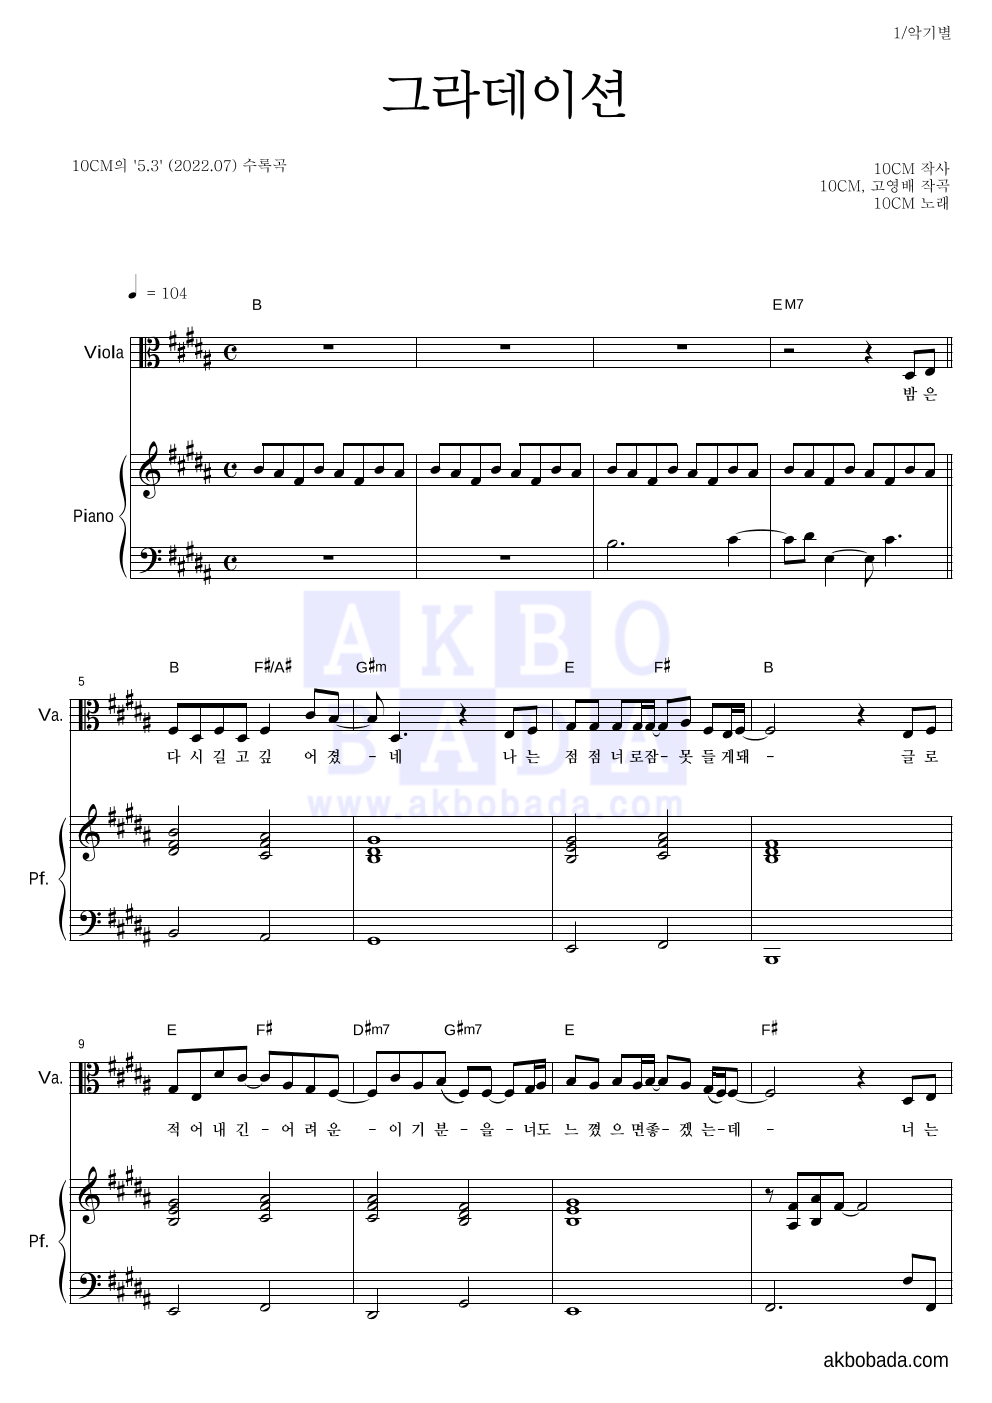 10CM - 그라데이션 비올라&피아노 악보 